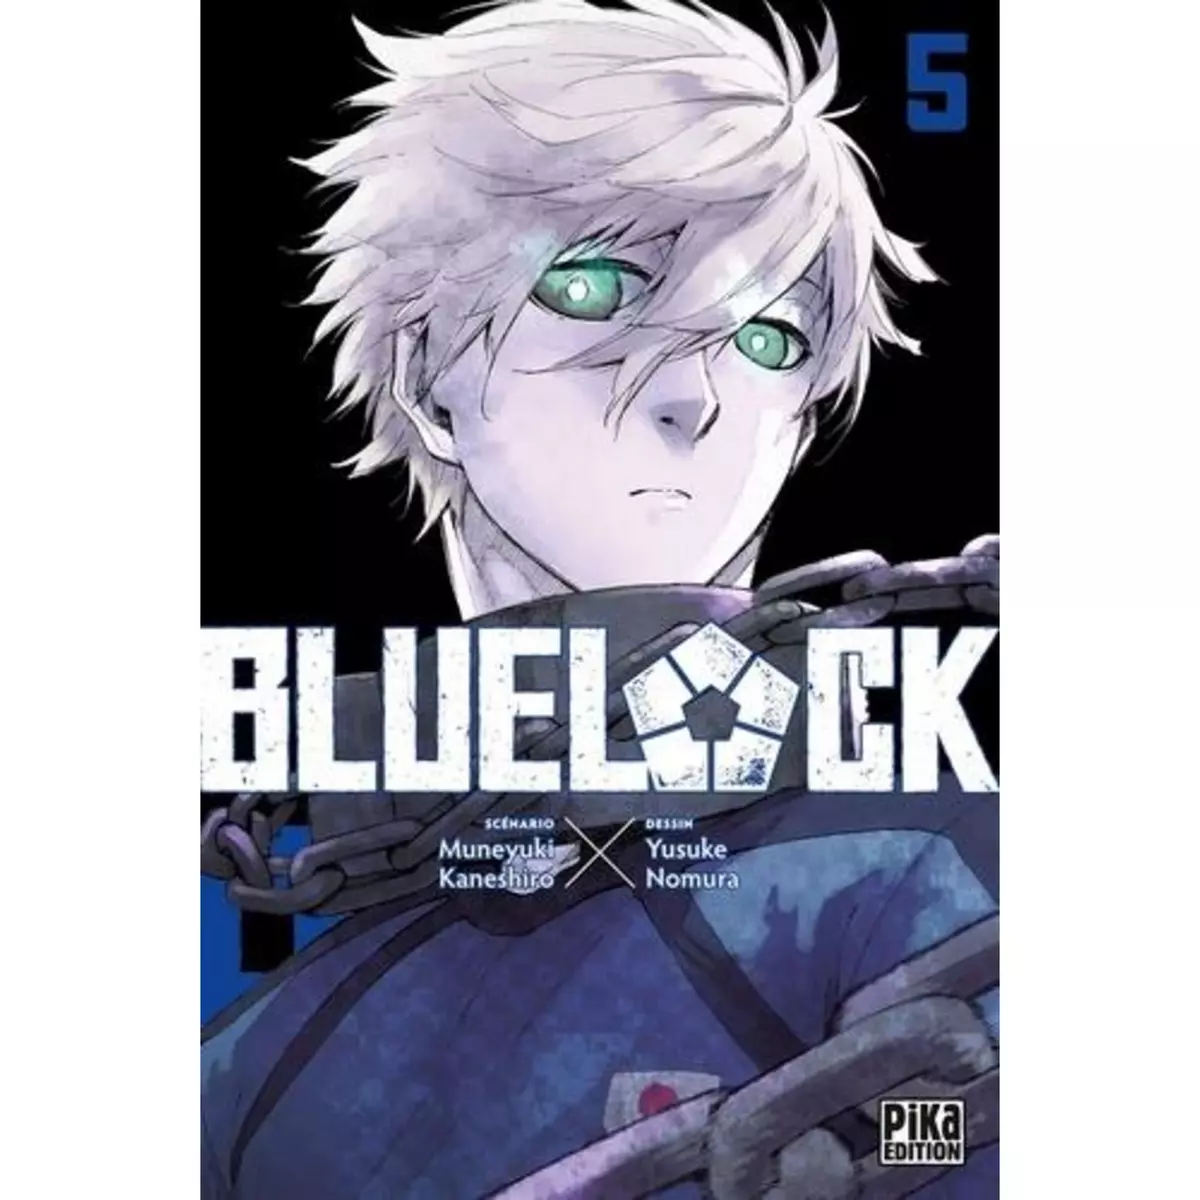  BLUE LOCK TOME 5 , Kaneshiro Muneyuki